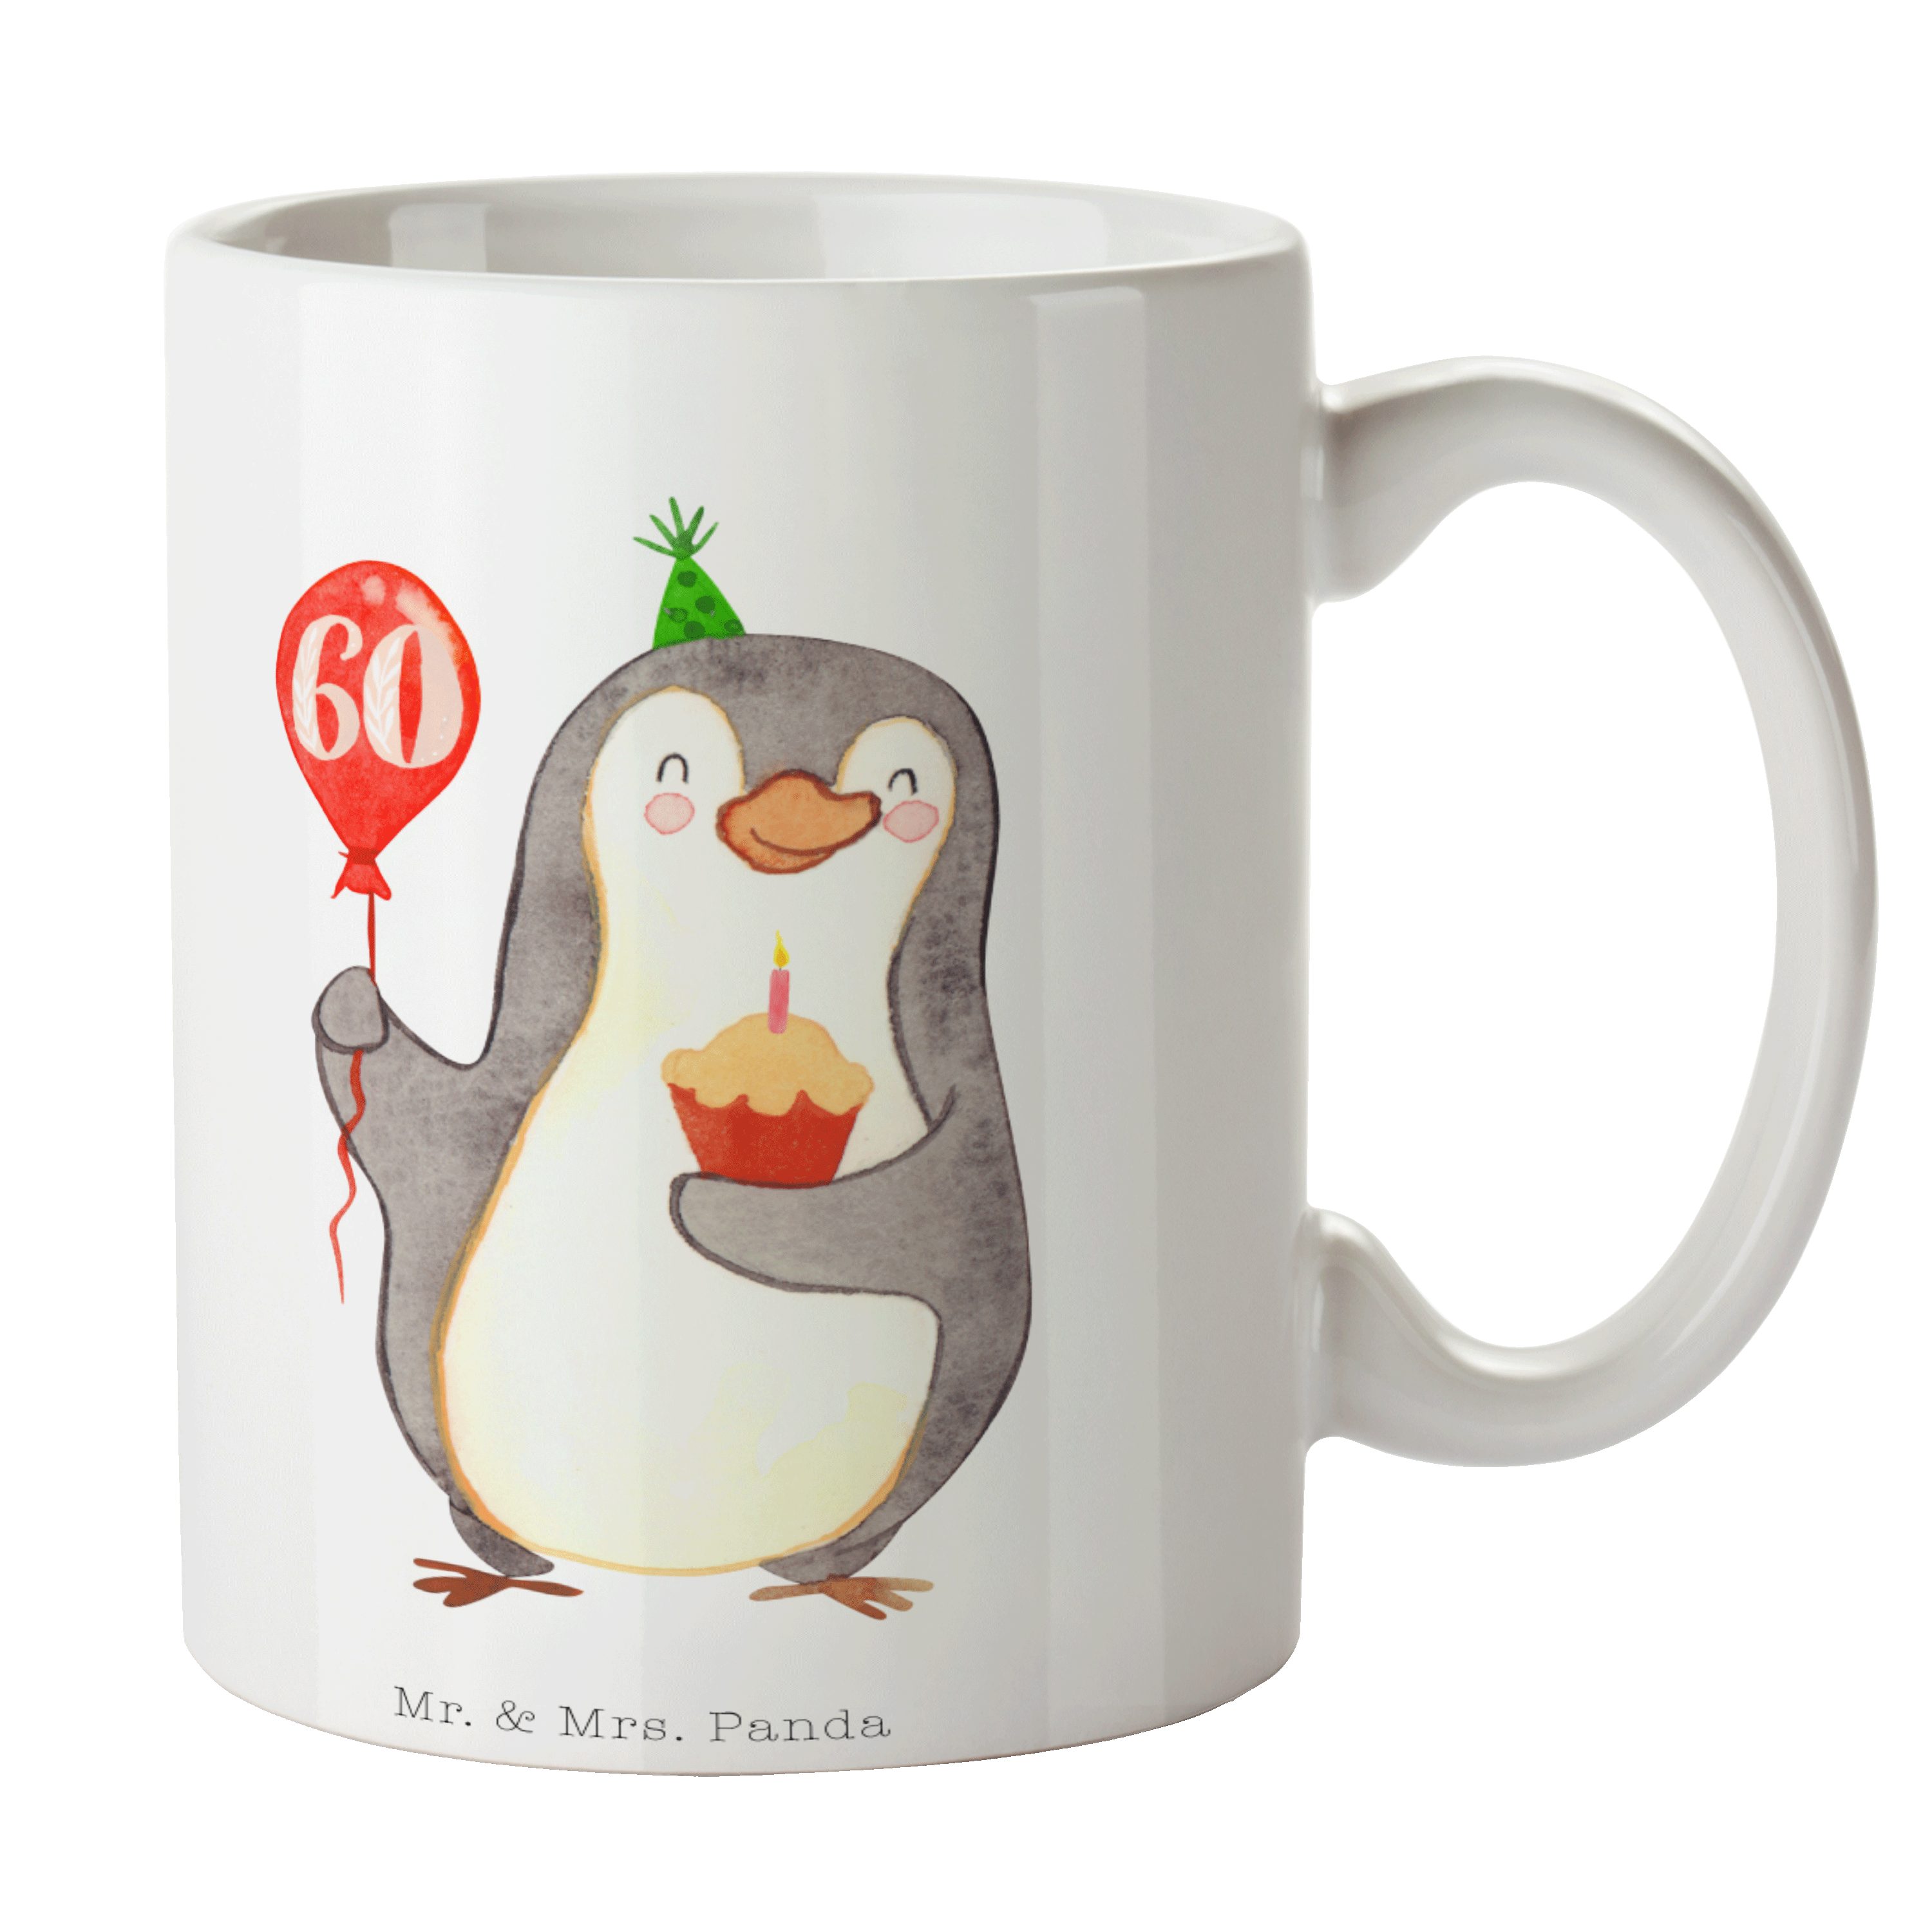 Mr. & Mrs. Panda Tasse 60. Geburtstag Pinguin Luftballon - Weiß - Geschenk, Happy Birthday, Keramik